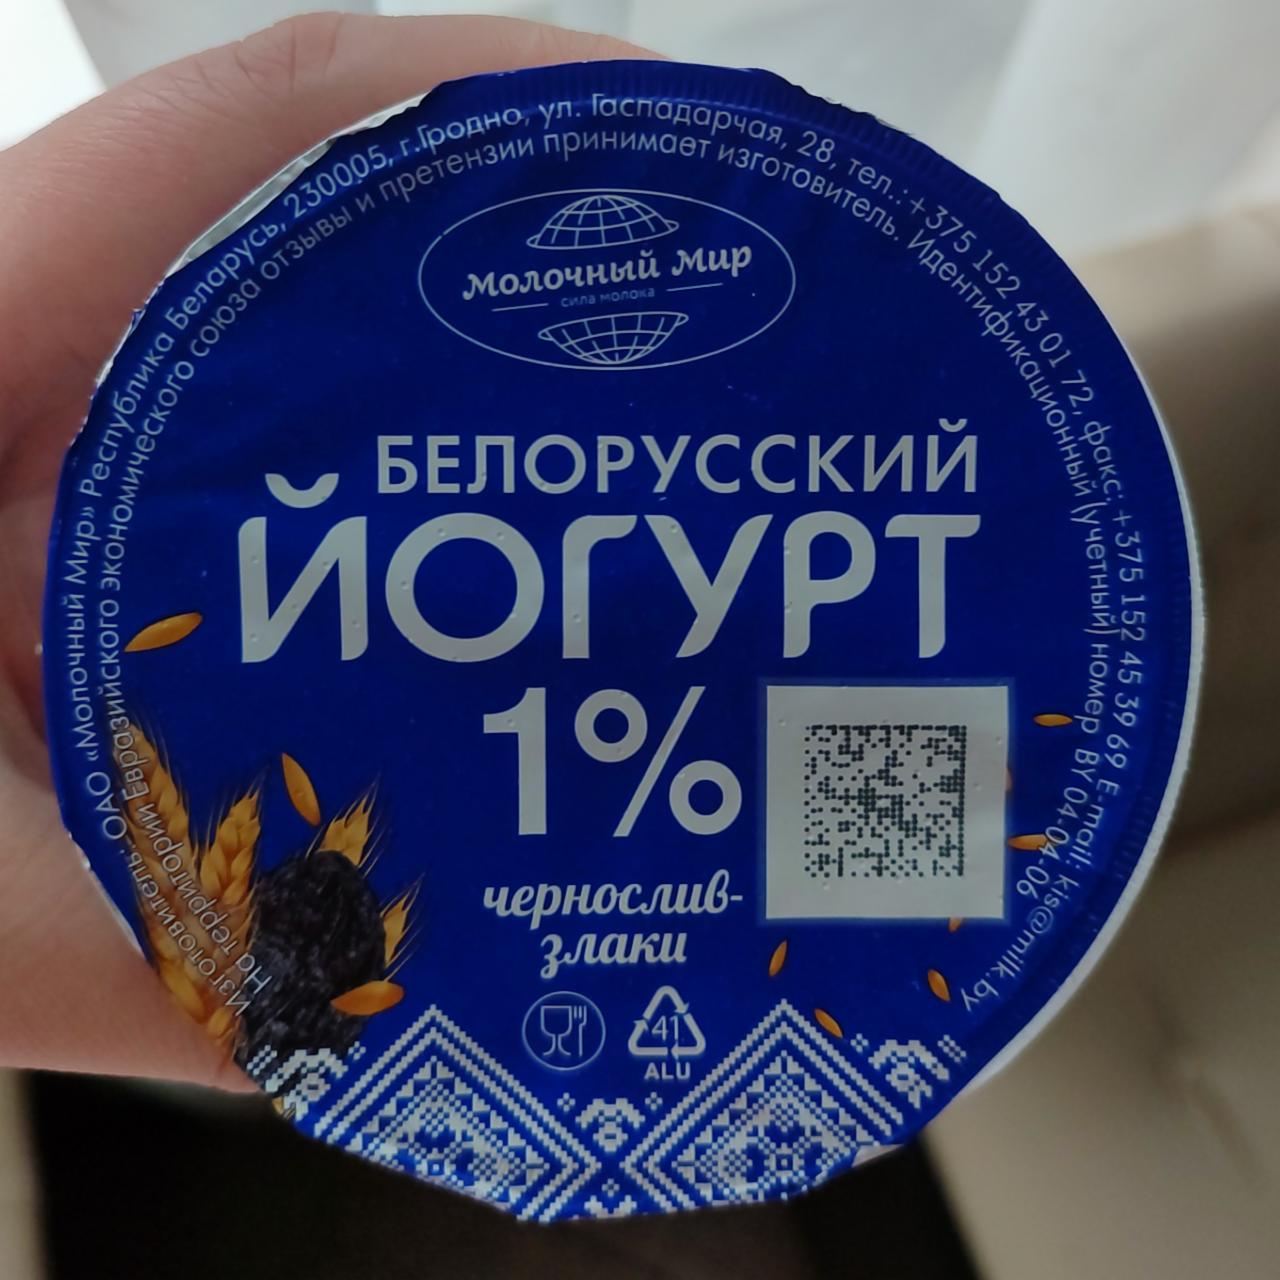 Фото - Йогурт белорусский чернослив-злаки Молочный Мир